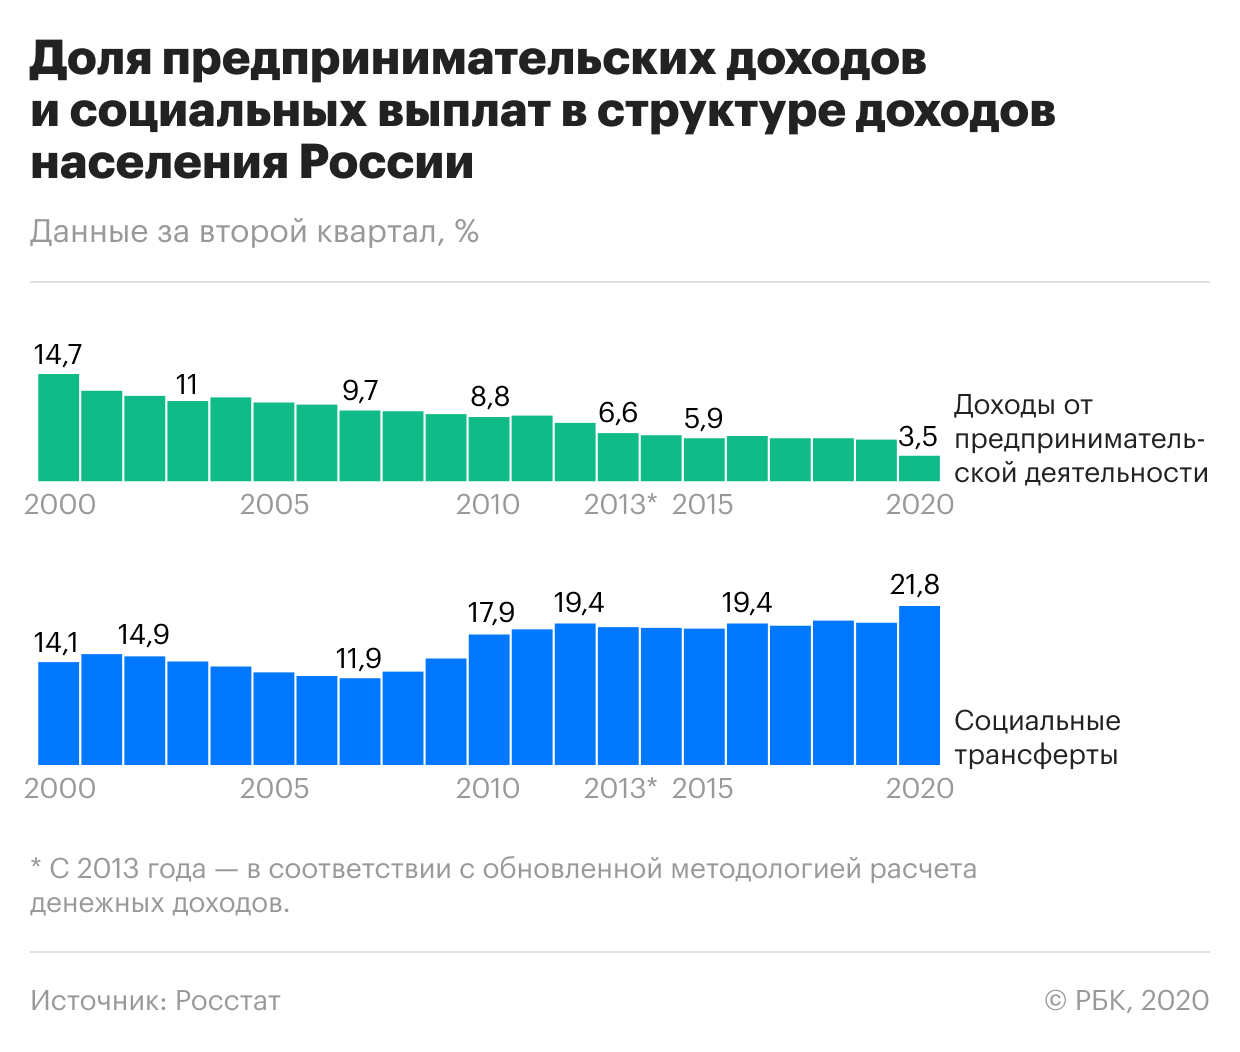 Предпринимательские доходы россиян упали до минимума за 20 лет